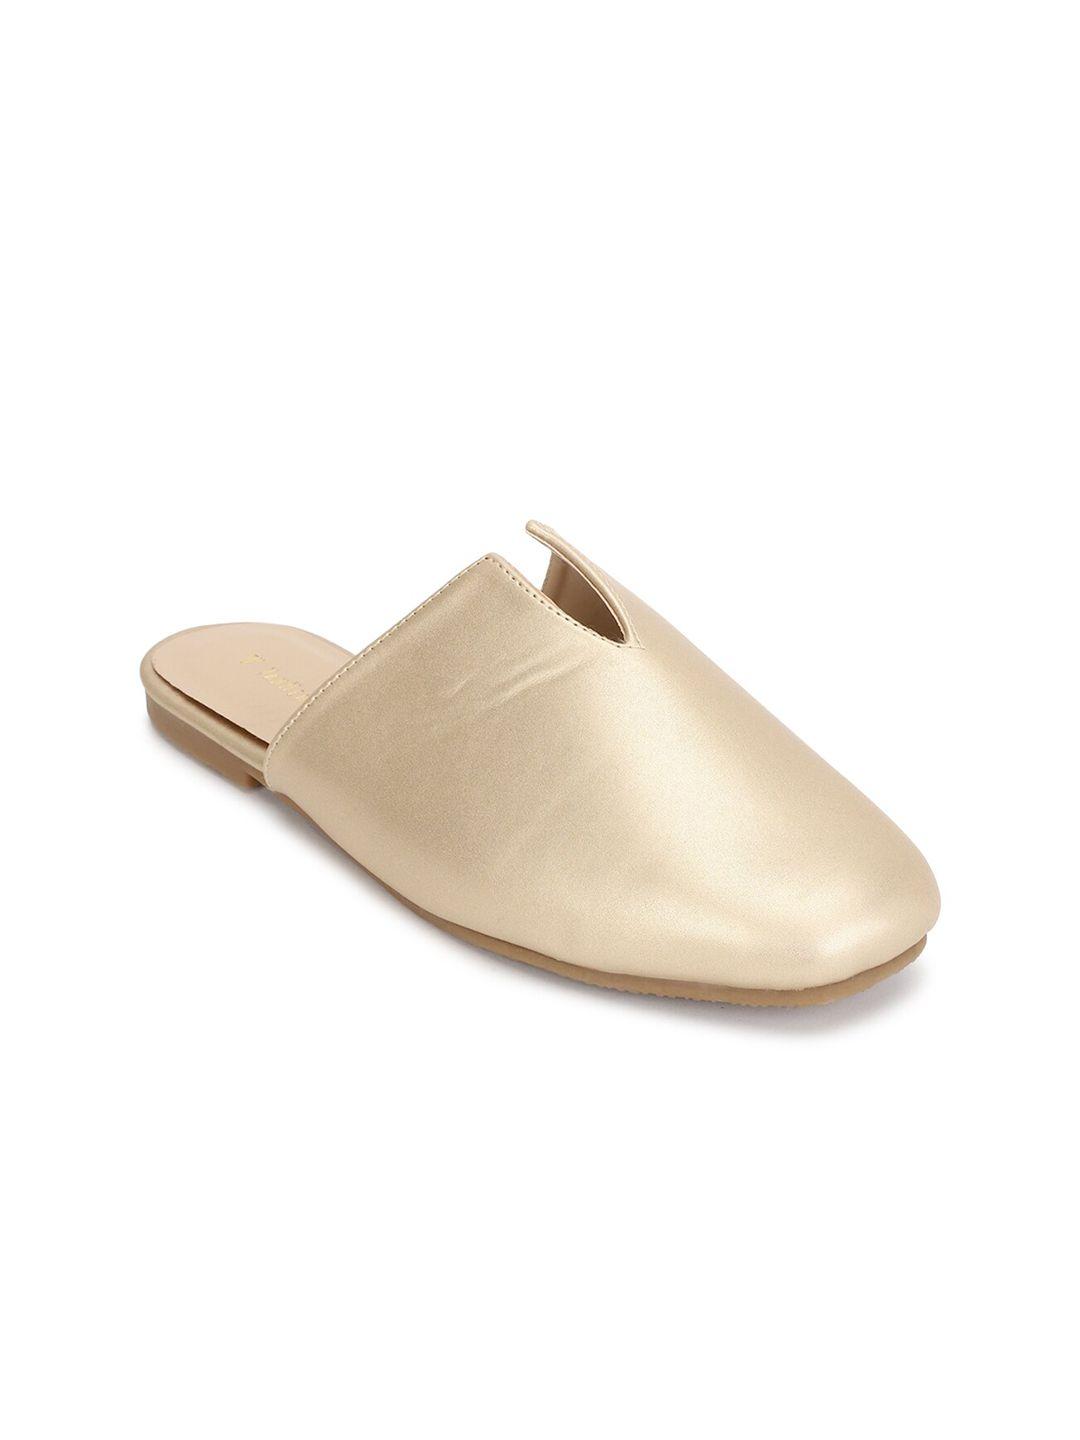 van-heusen-woman-women-beige-comfort-sandals